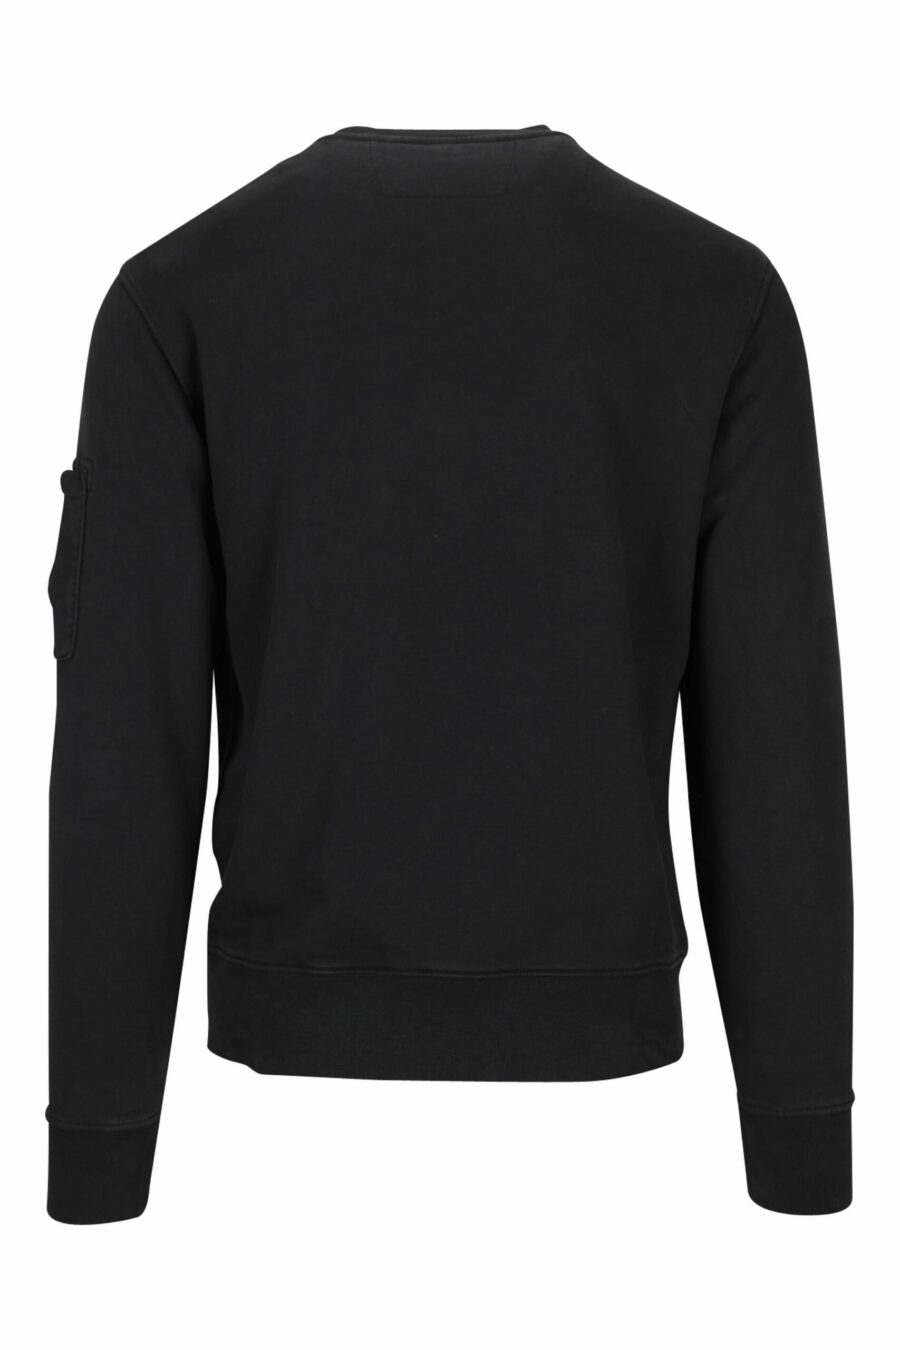 Schwarzes Sweatshirt mit seitlicher Logolinse - 7620943598650 2 skaliert